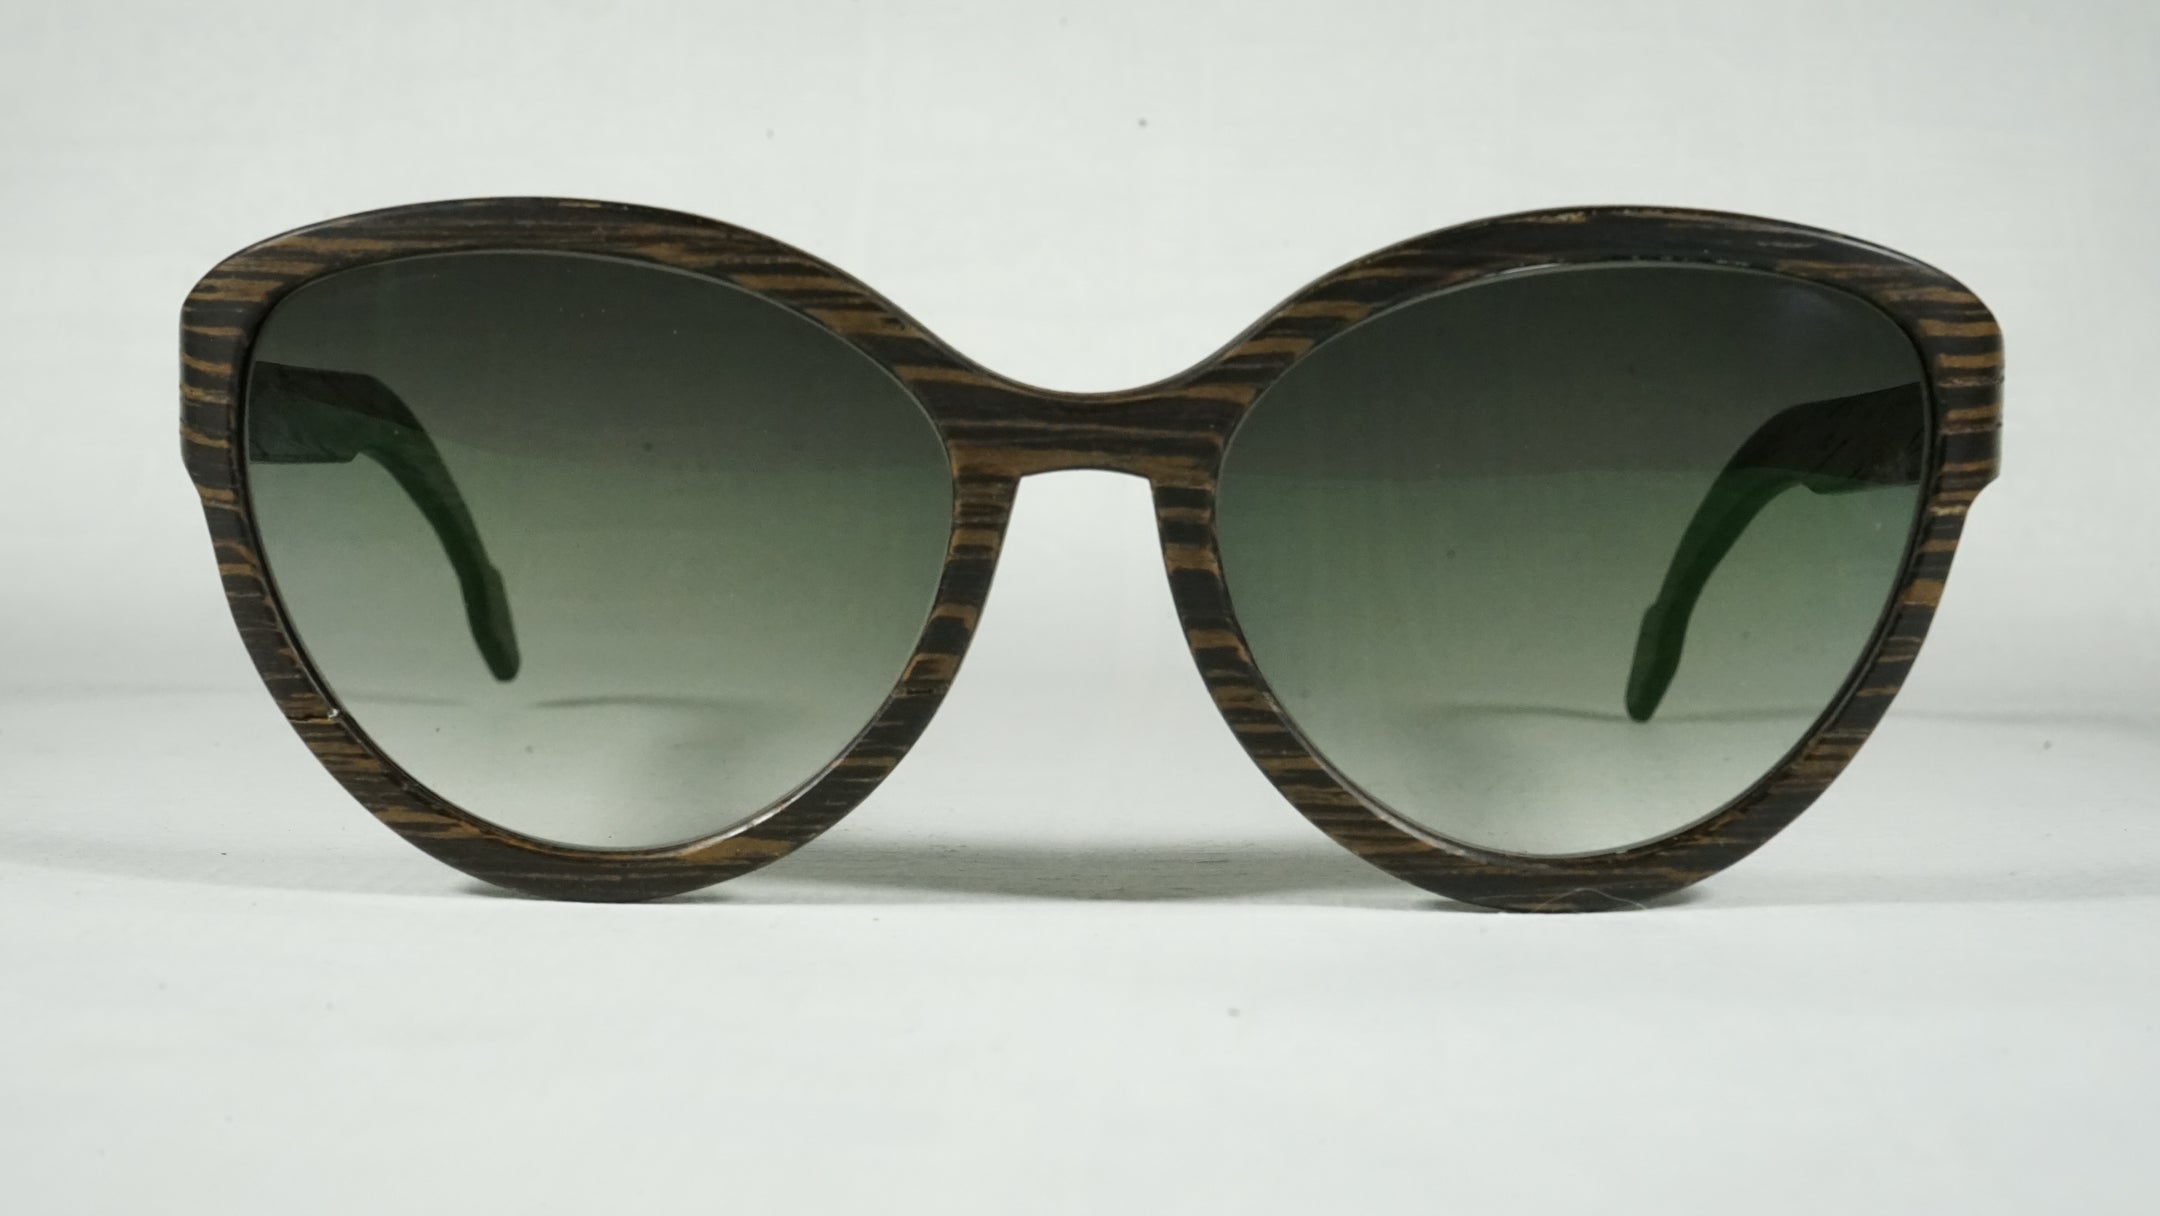 Virginia - Designer Wooden Sunglasses (For Her)